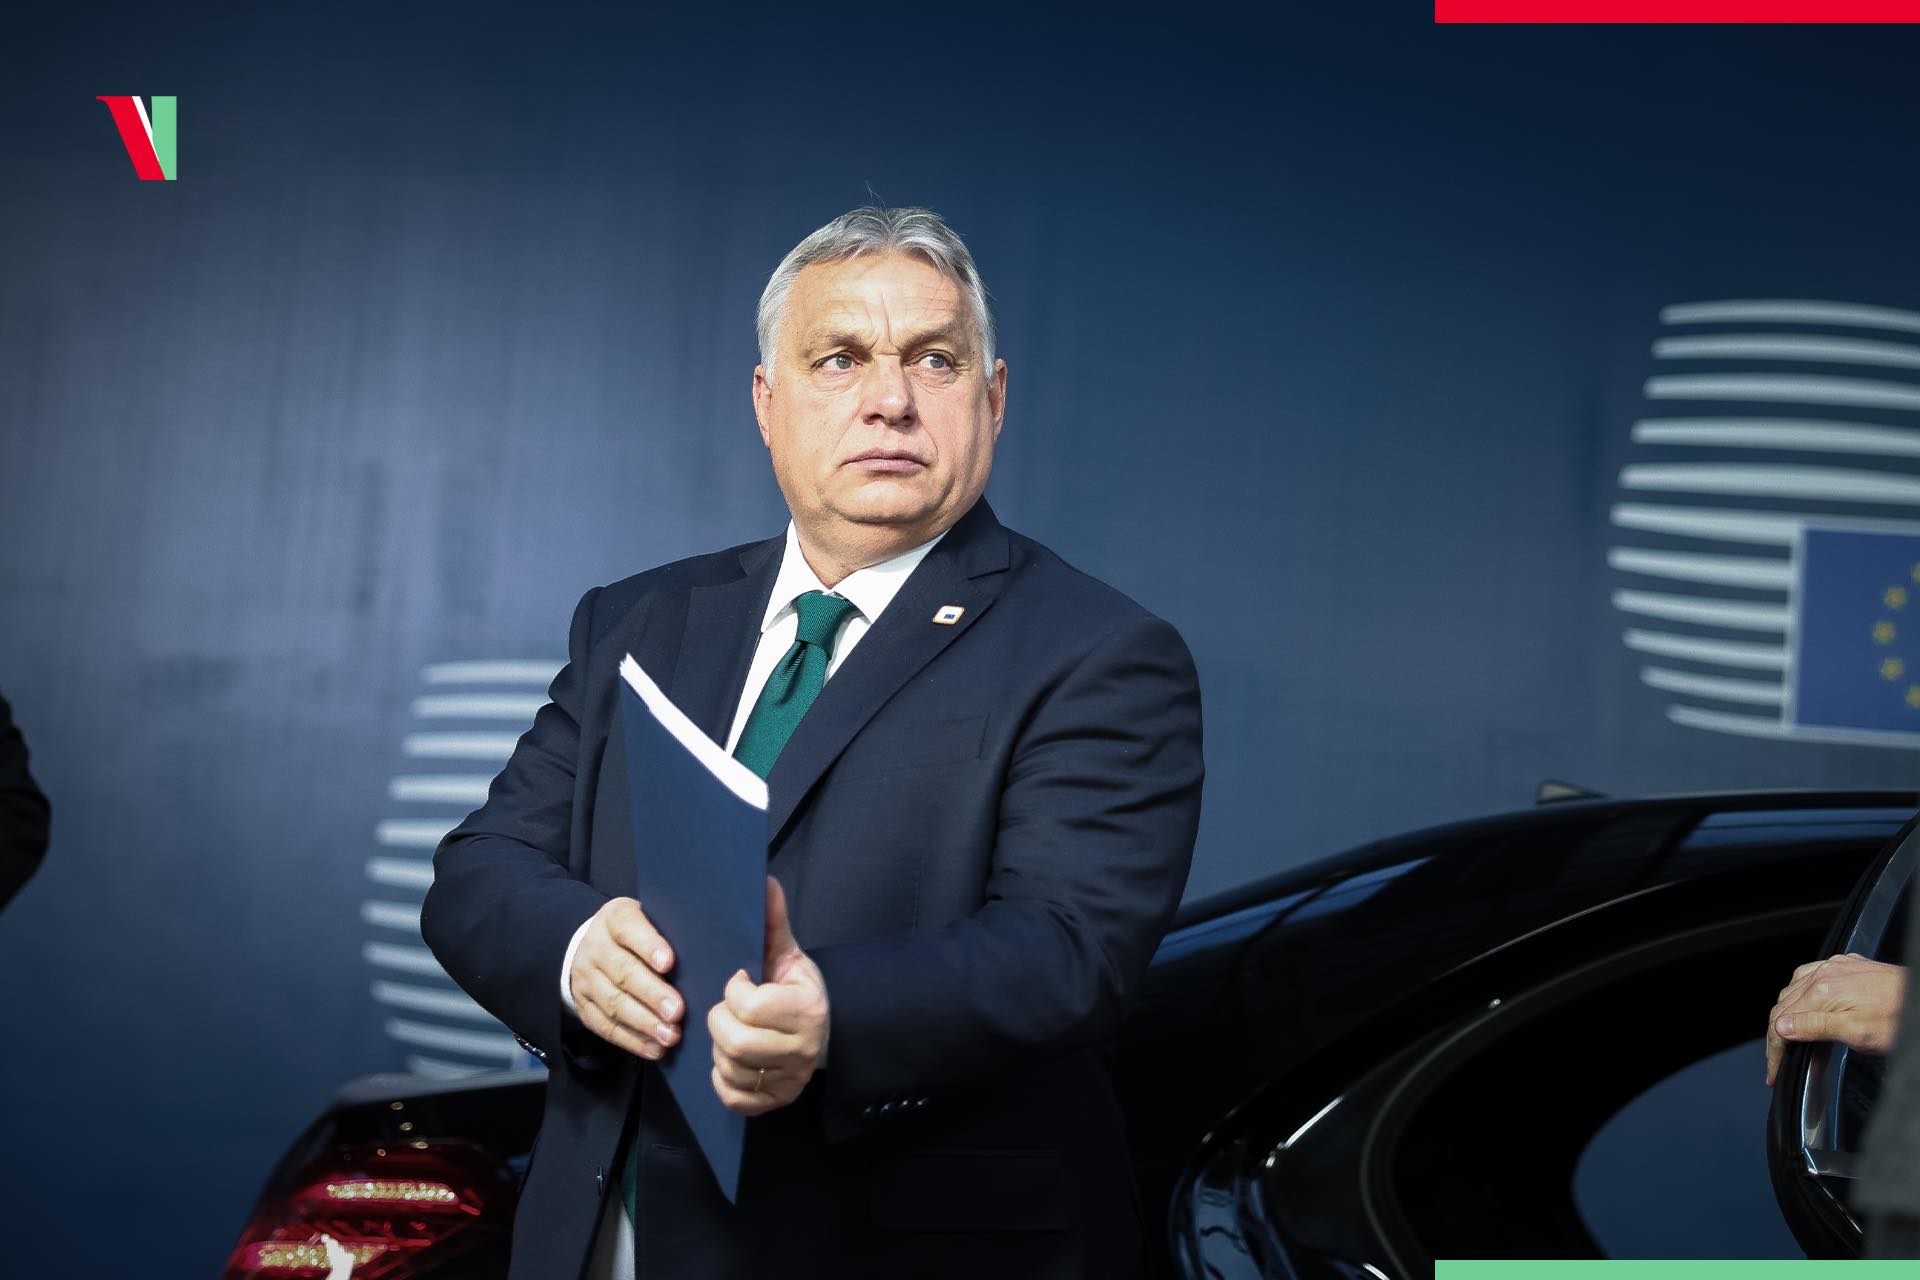 Viktor Orbán sa usiluje o pozíciu „regionálneho lídra“ strednej Európy